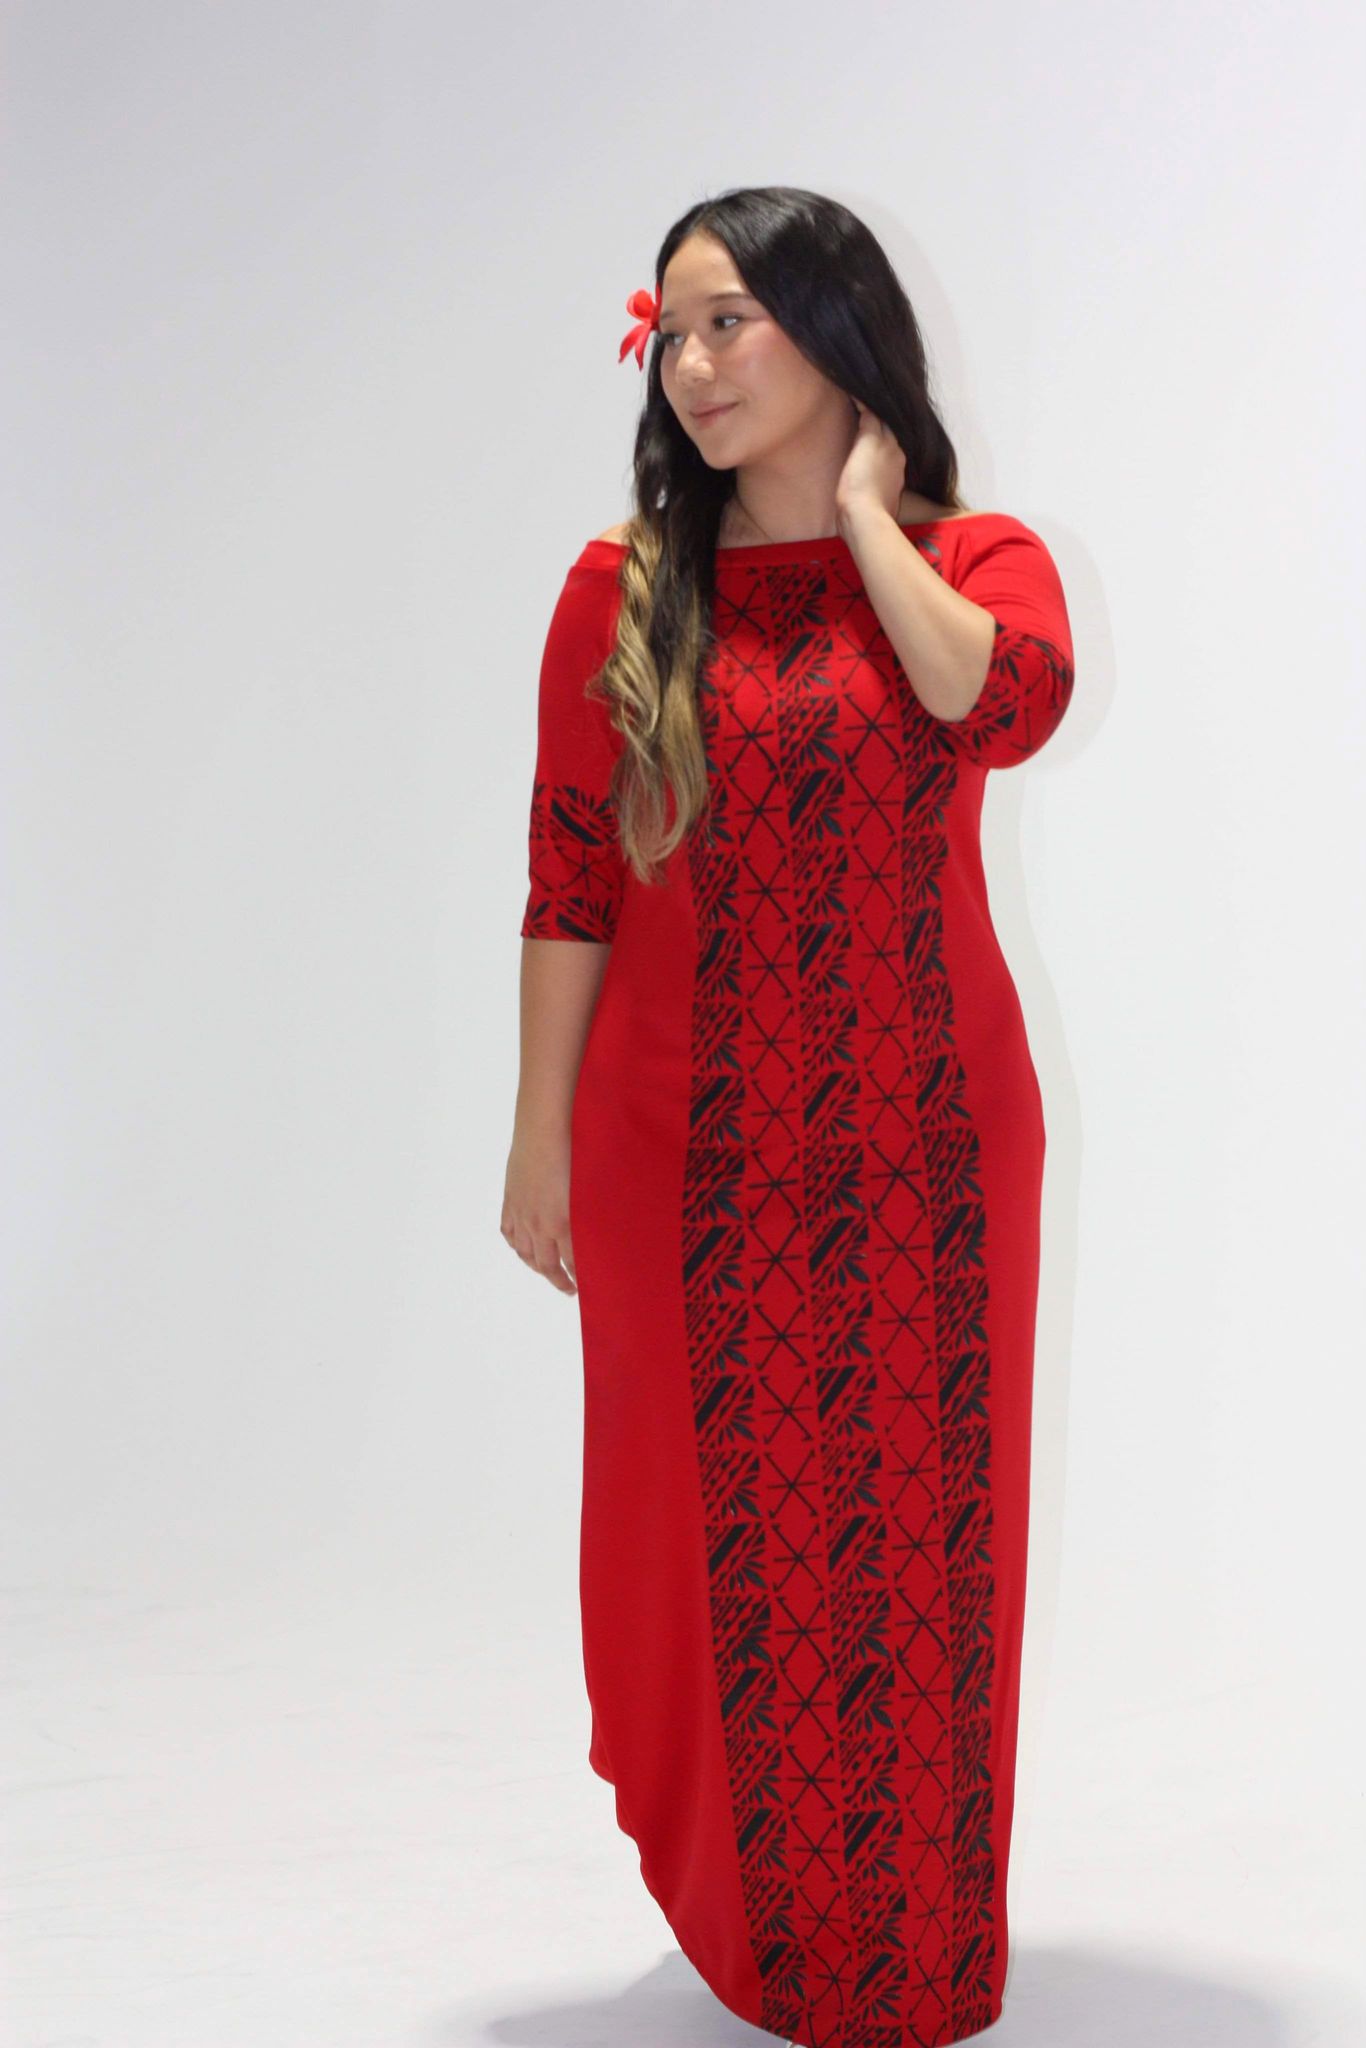 Cece's Red Regal Kiara Dress